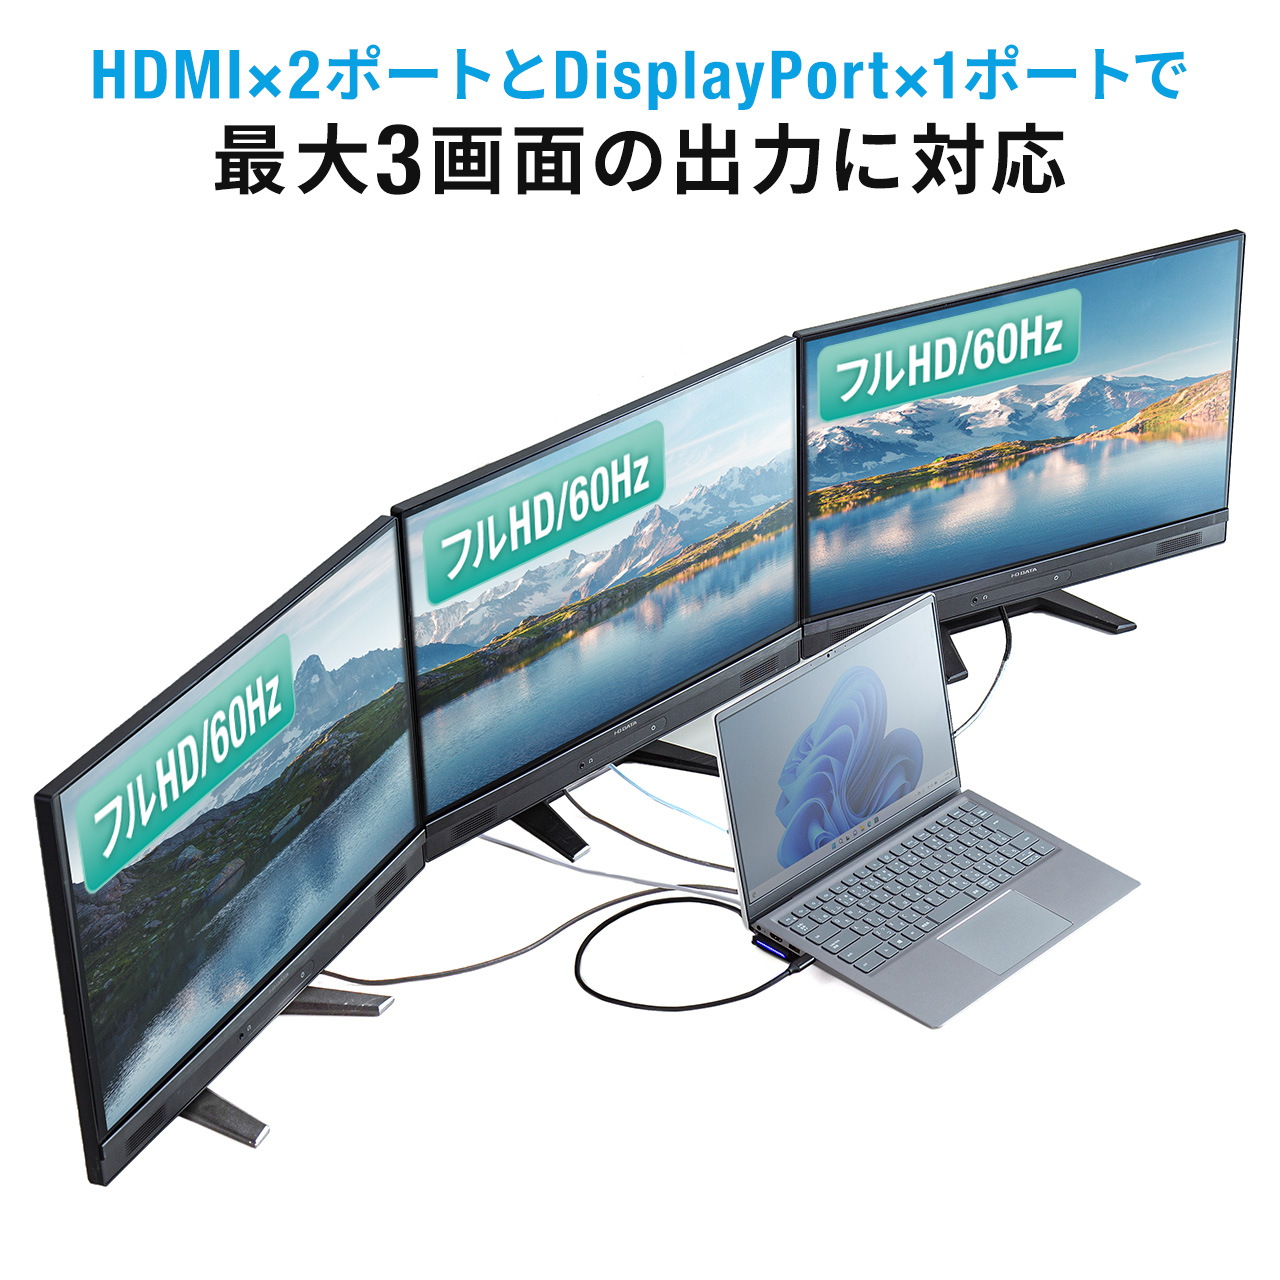 ドッキングステーション HDMI 2つ 2ポート DisplayPort 3画面出力 USB